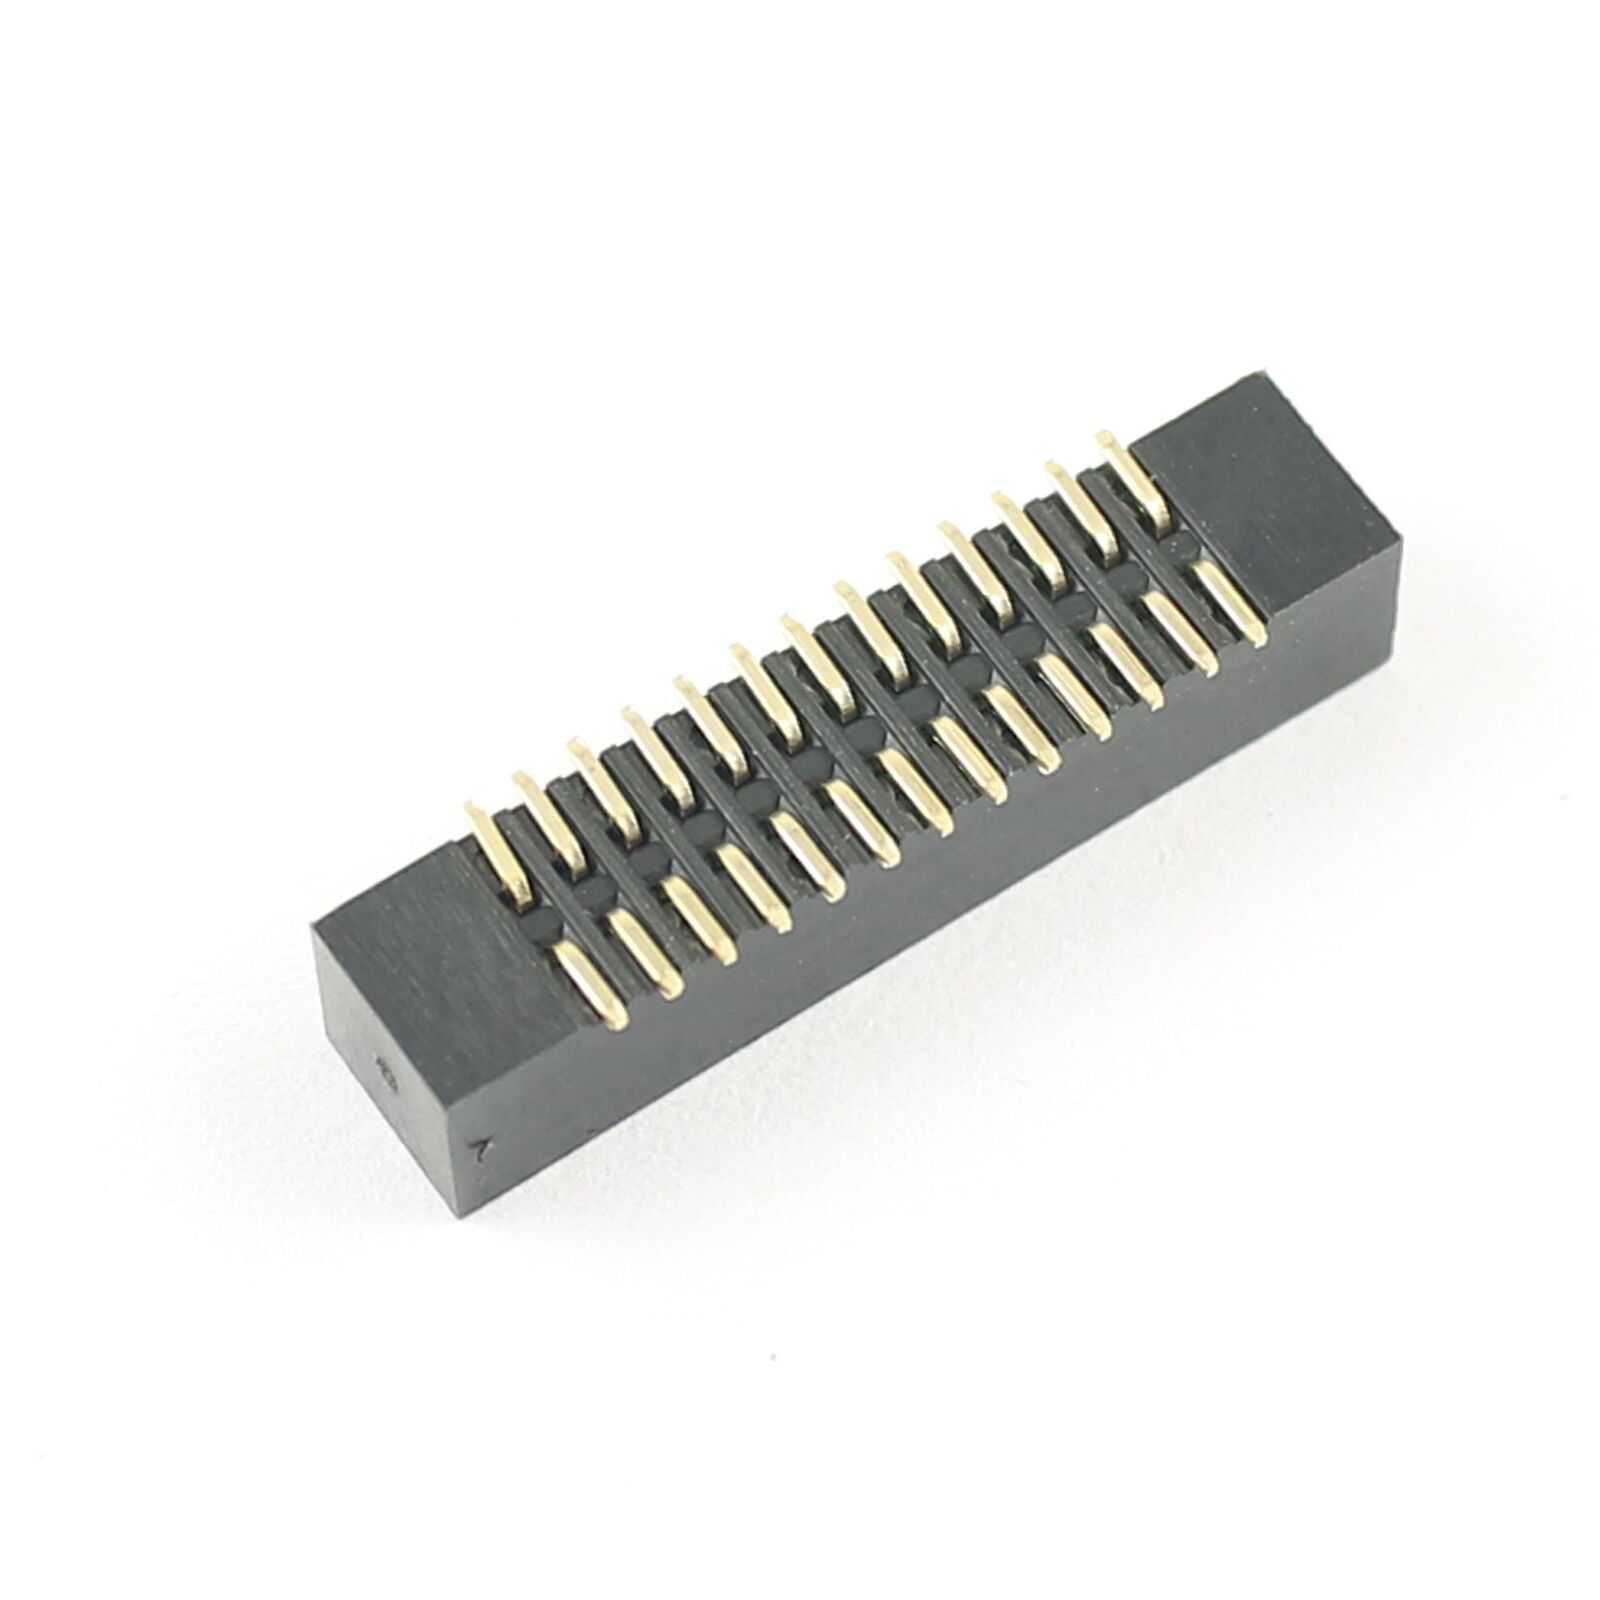 Pin header 2x13 pin 1